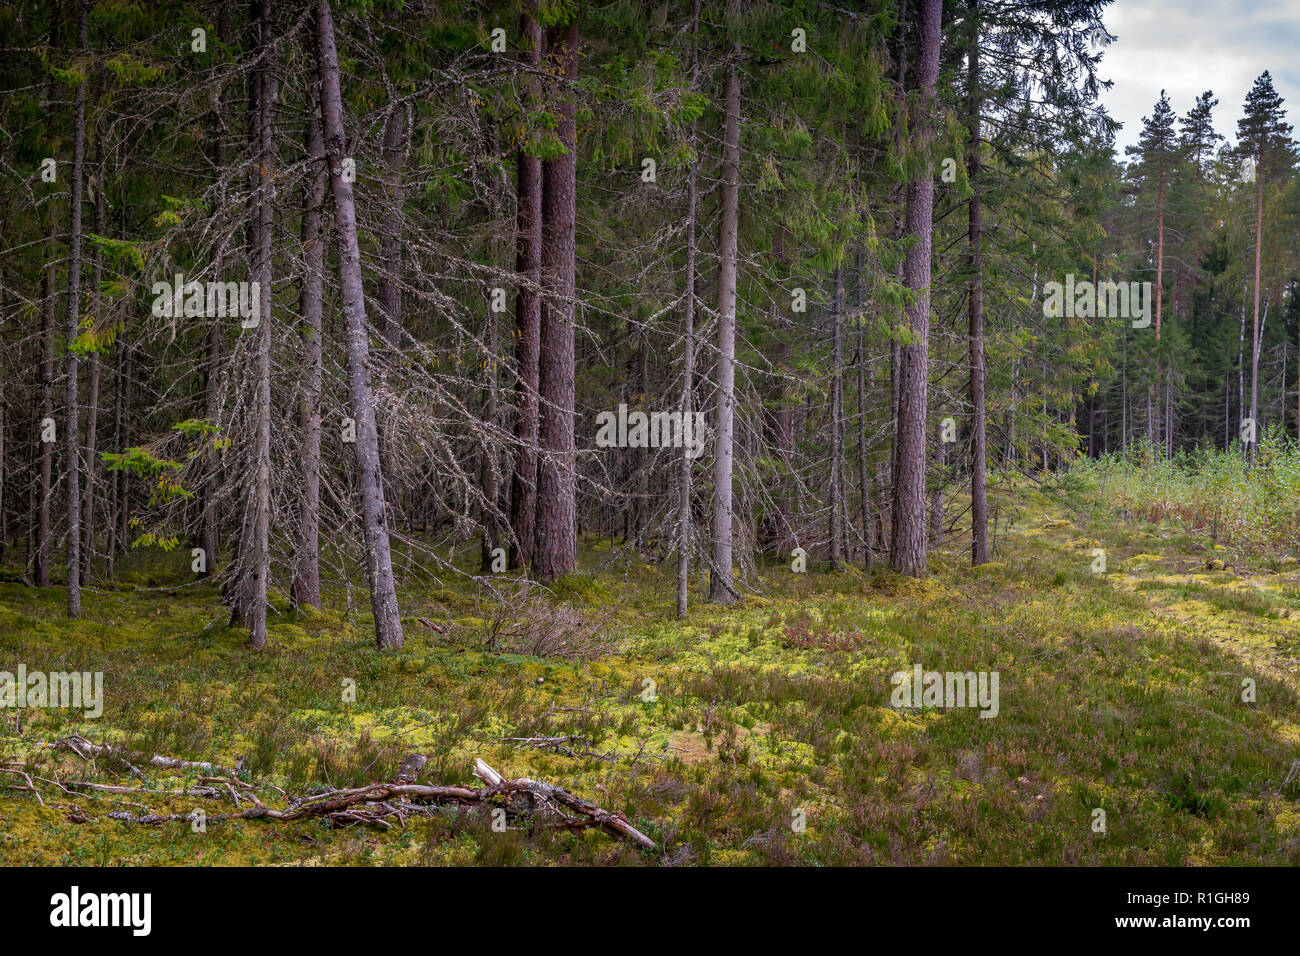 Mossy bosque de coníferas en Letonia. El abeto y el bosque de pinos. Bosque mixto de pinos y abetos. Bosque de coníferas con abetos y pinos. Foto de stock